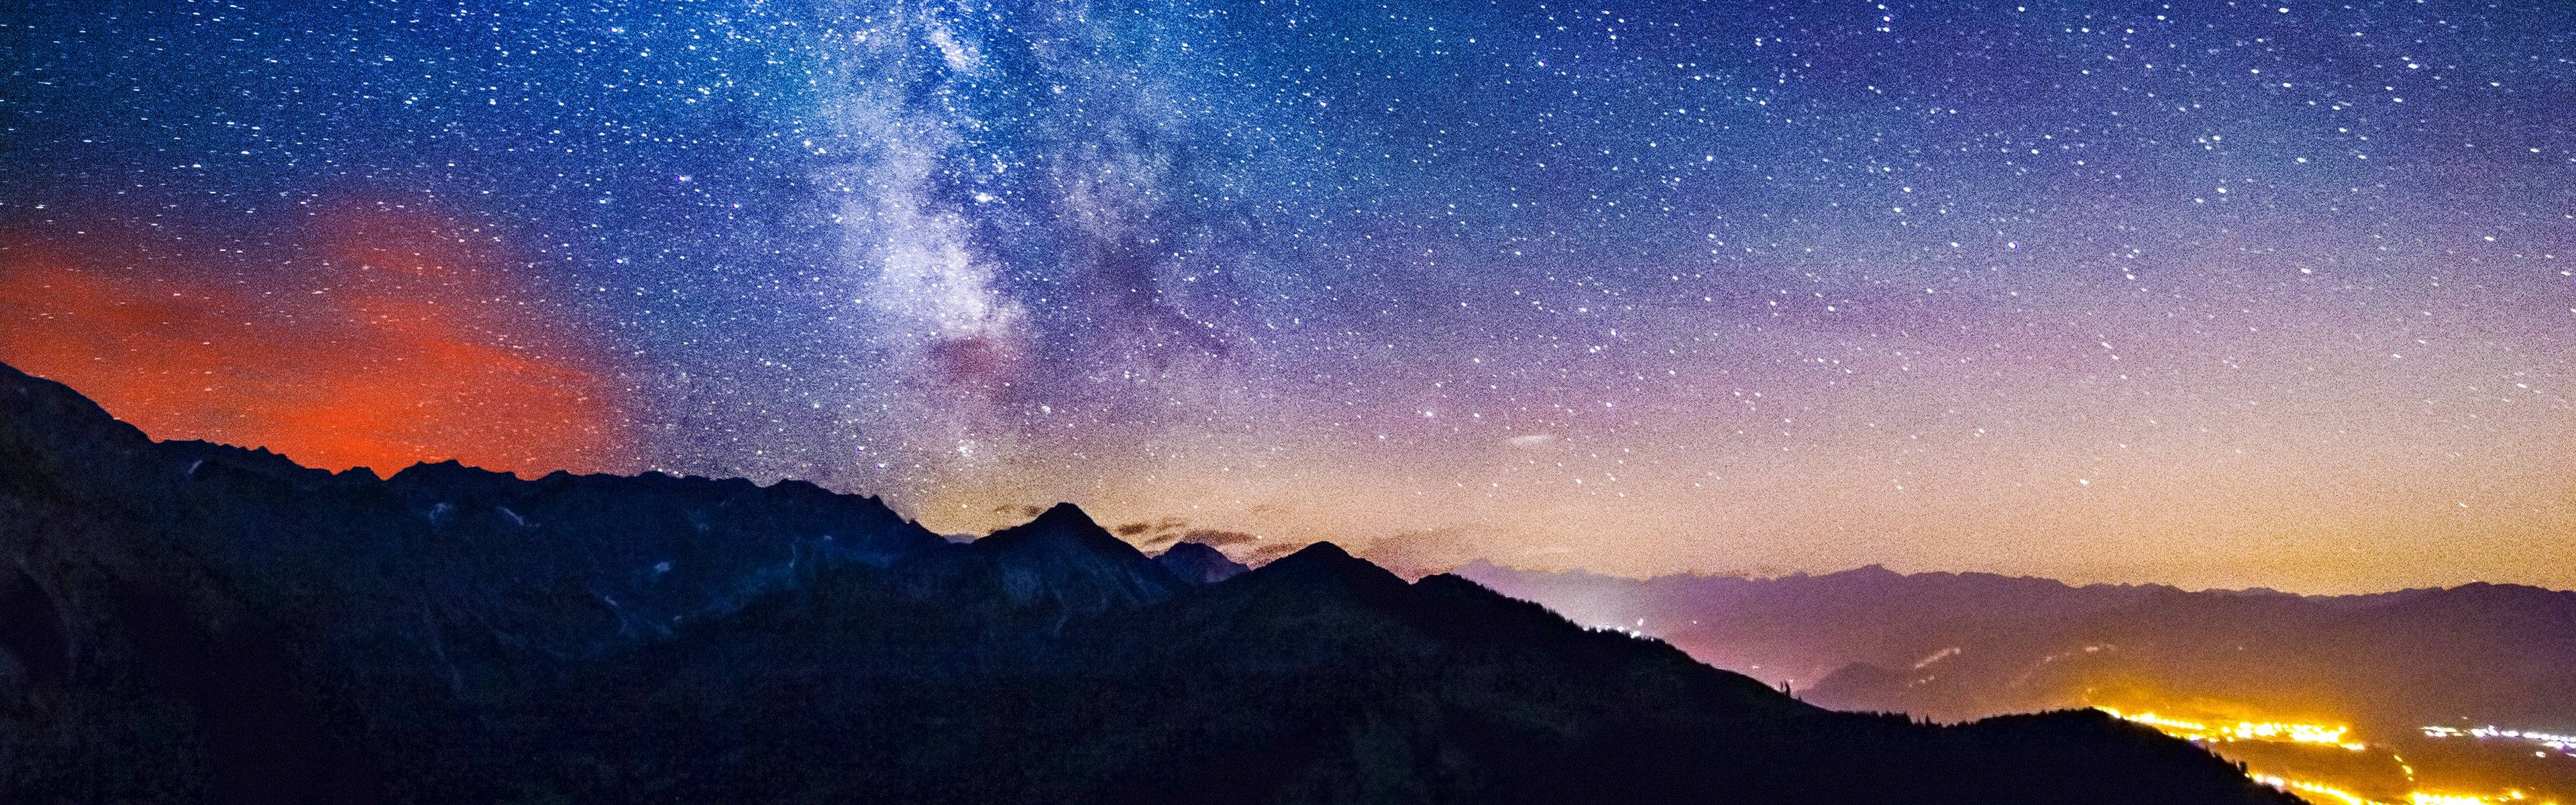 Hãy tải ngay hình nền Starry Sky đẹp lung linh, phù hợp cho đa màn hình để trang trí cho desktop của bạn trở nên thêm lung linh và lãng mạn hơn. Tại Wallpapers.com, chúng tôi luôn cung cấp những hình ảnh đẹp nhất cho bạn.